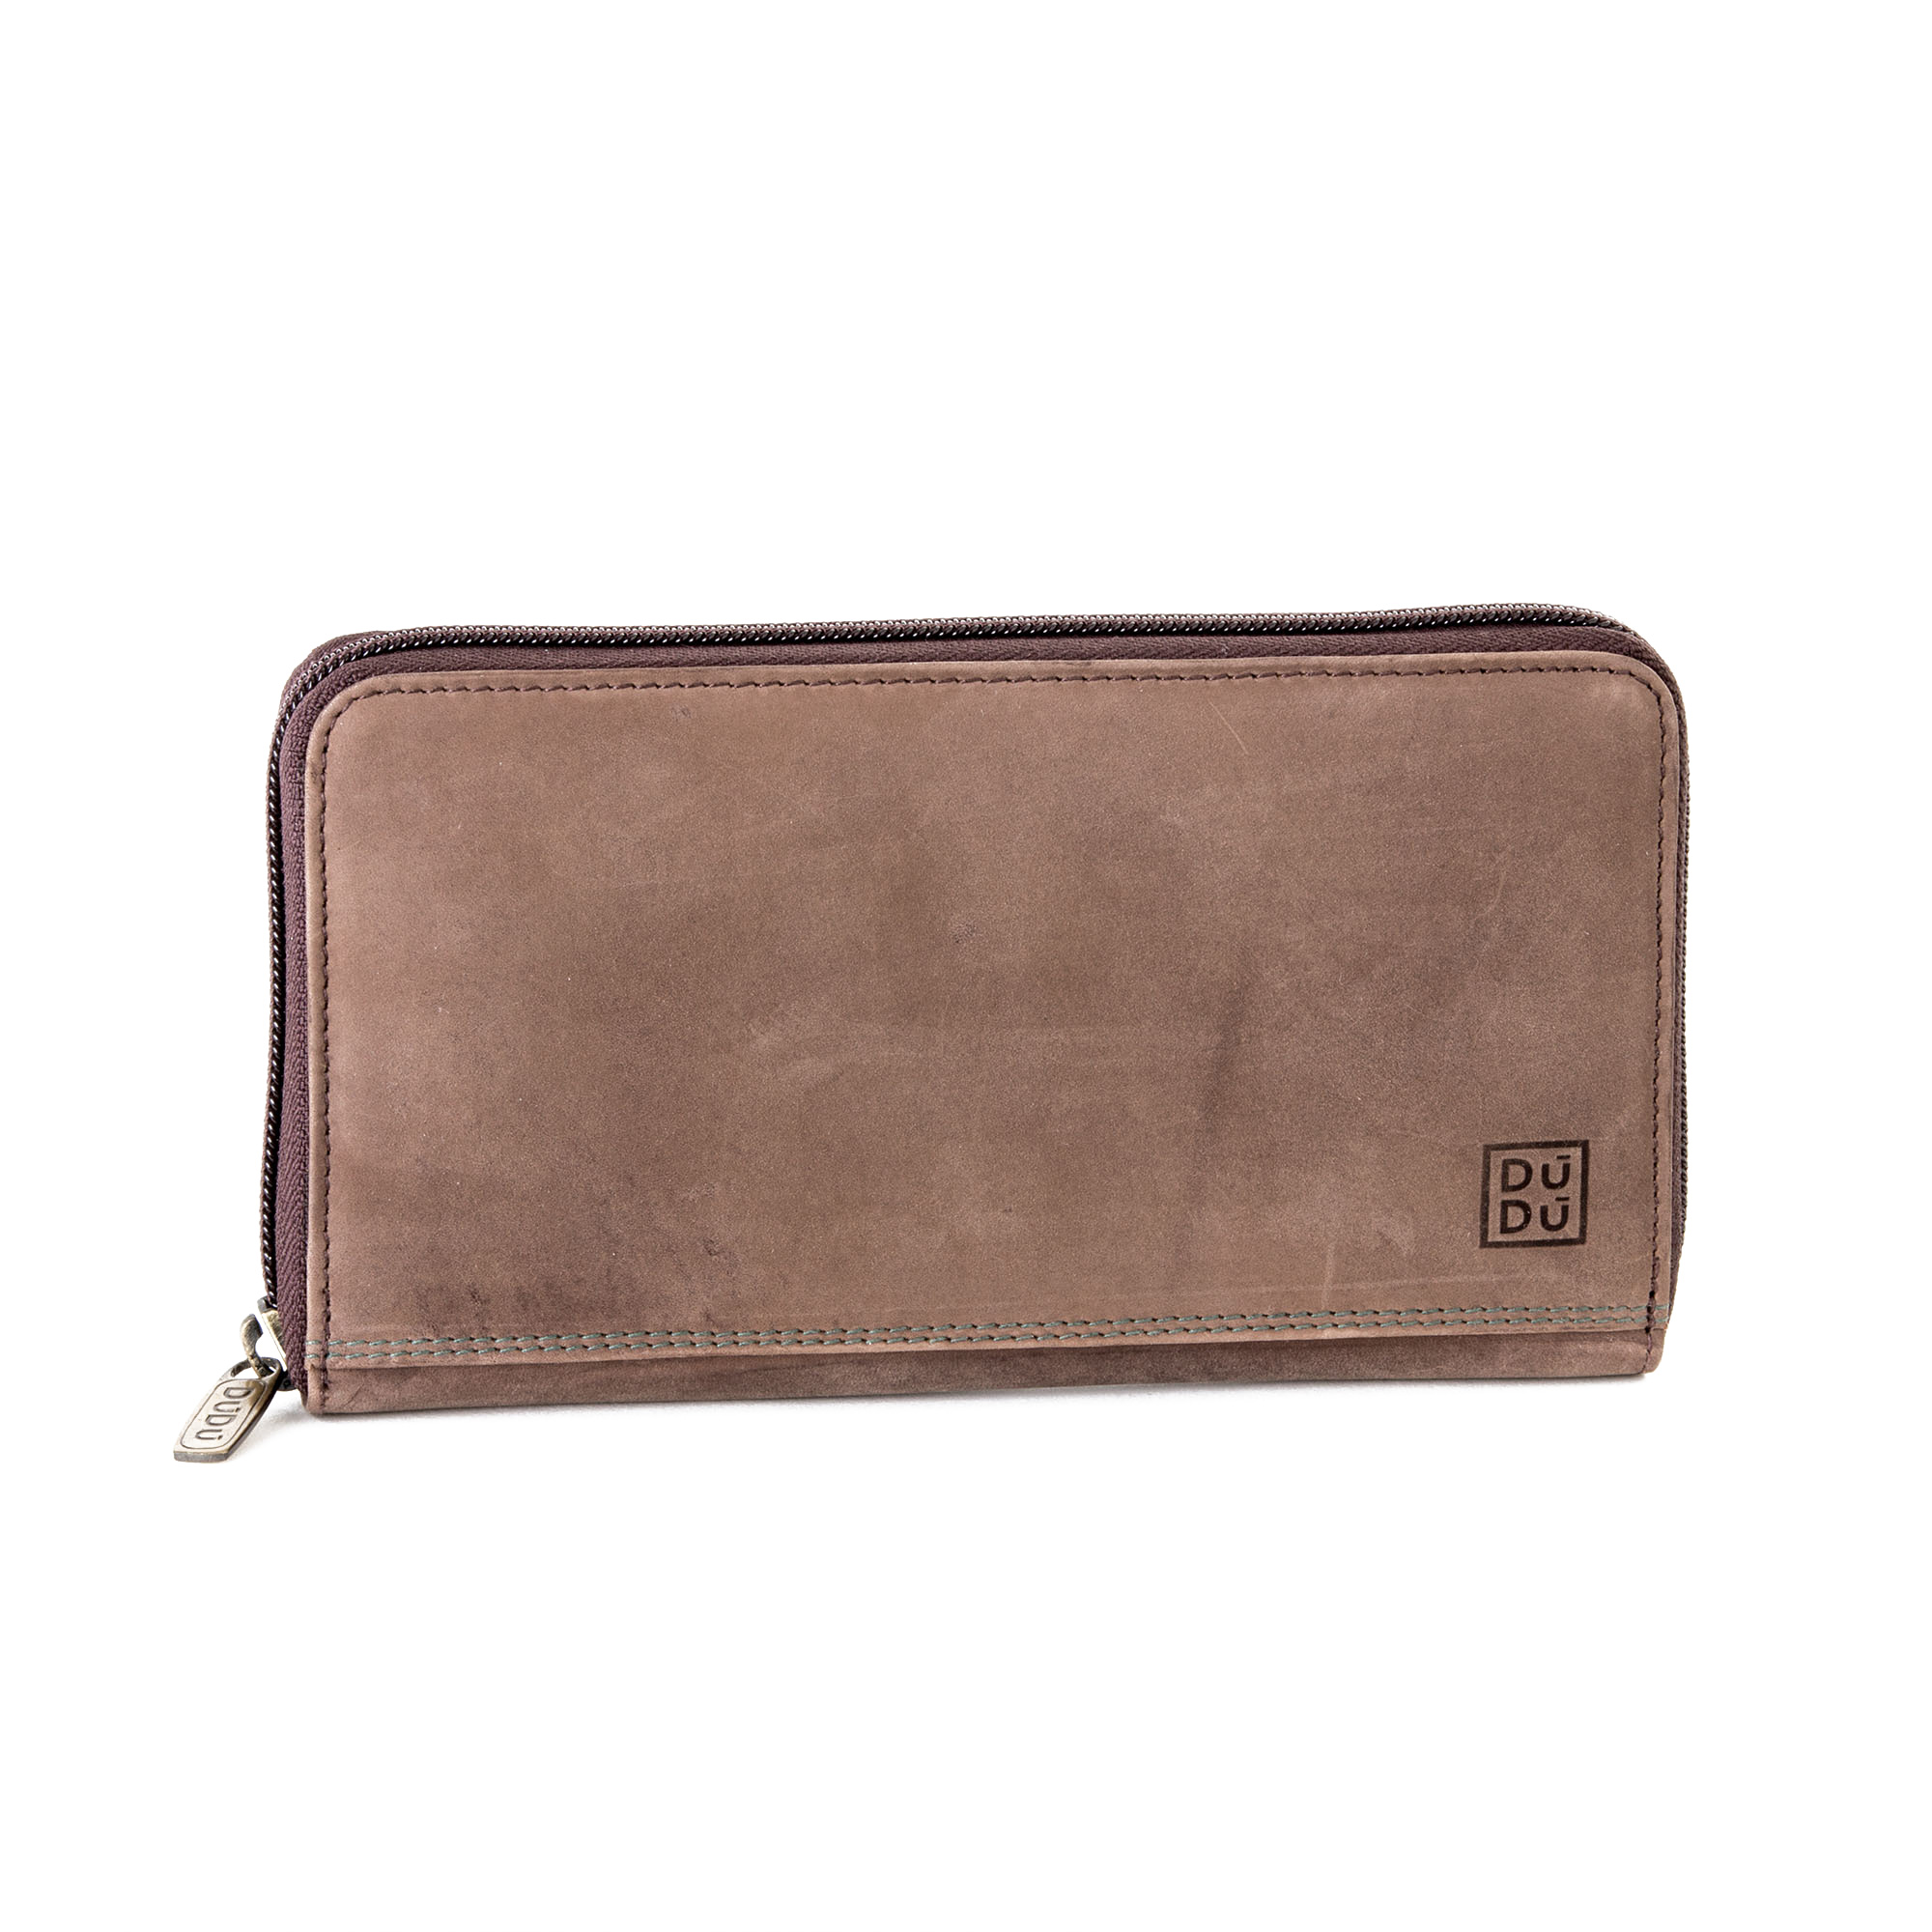 Ladies purse Zip Around Wallet in Vintage Leather Coin & Credit cad holder DUDU 8031847150339 | eBay